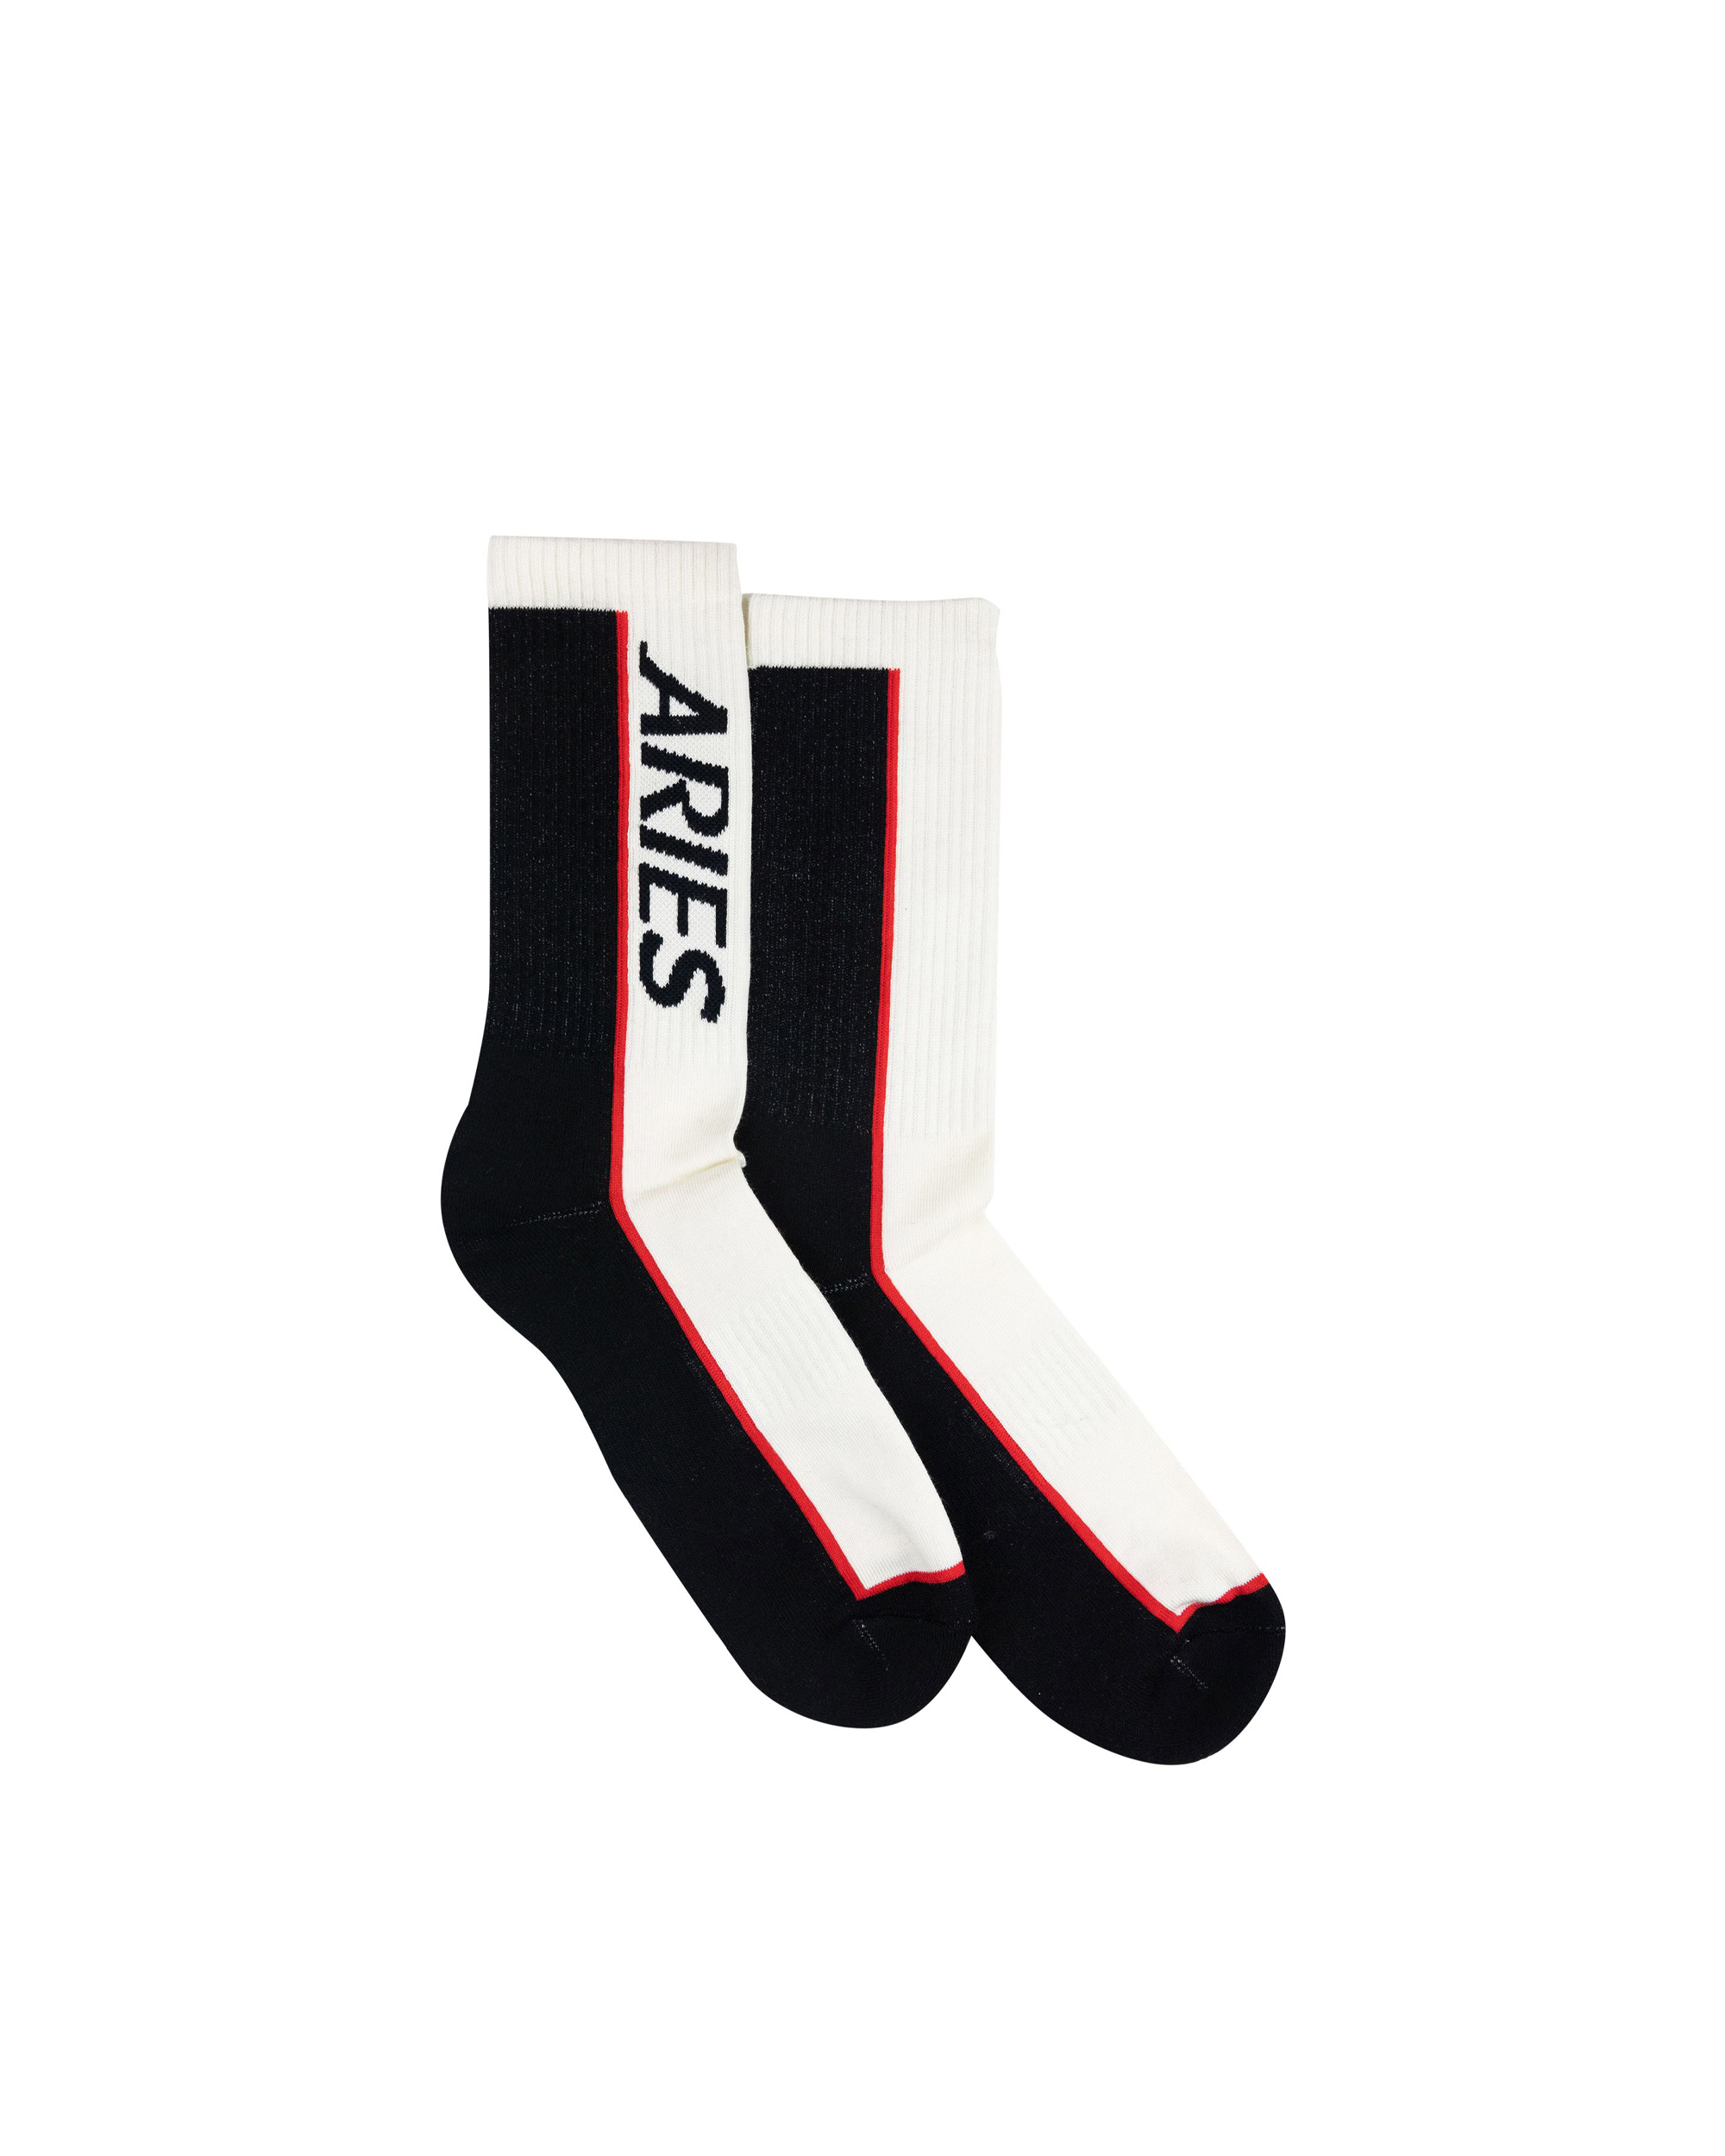 Aries Socks Credit Cards In Alb